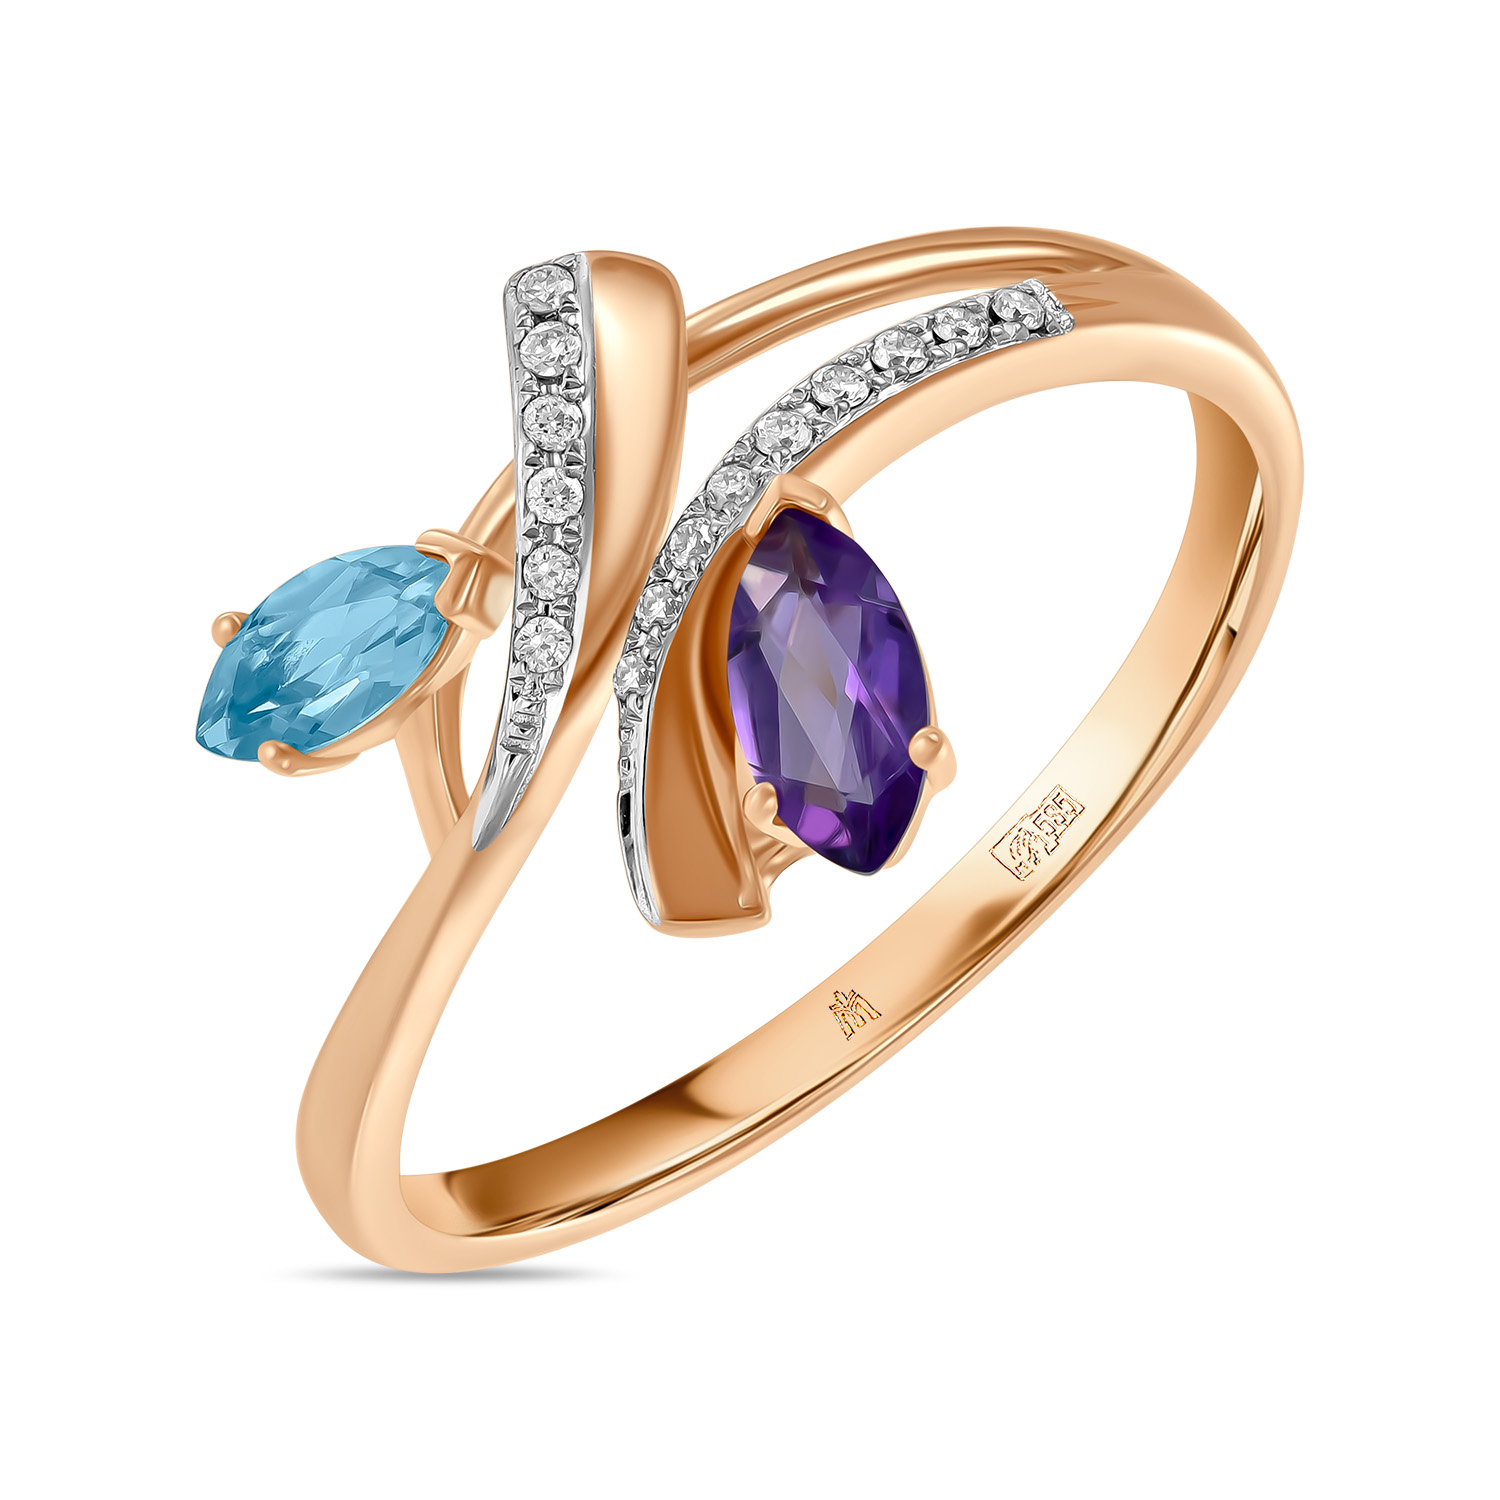 Кольца МЮЗ Золотое кольцо с аметистом, топазом и бриллиантами кольца мюз золотое кольцо с аметистом топазом цитрином бриллиантами и цветными бриллиантами